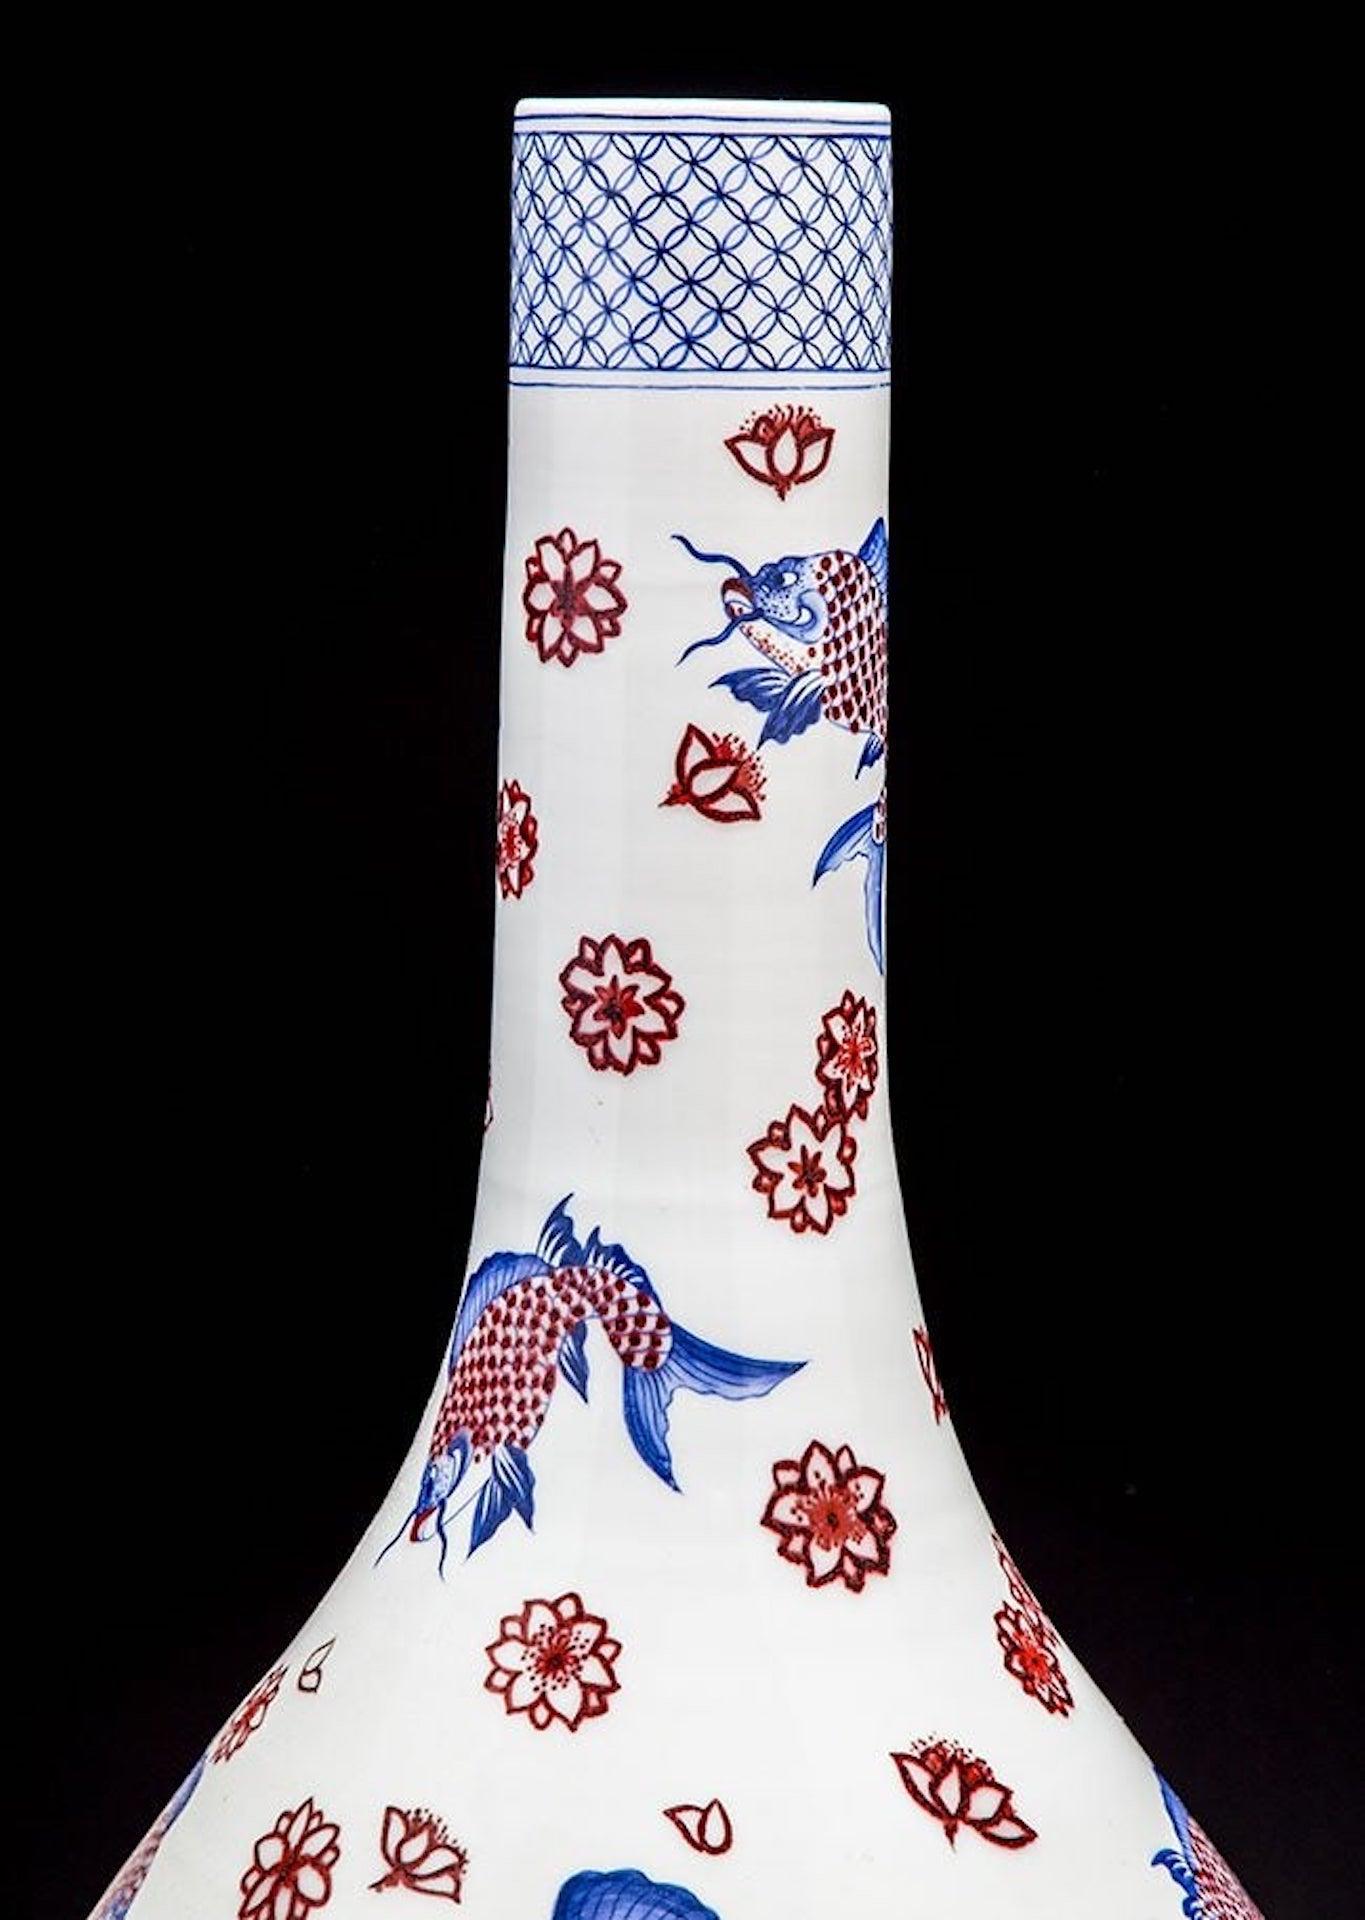 Grand vase japonais Imari
De forme balustre avec un long col étroit émaillé en bleu sous glaçure et rouge de fer avec des poissons-chats et des fleurs ; signé.
Mesures : Hauteur 76,2 cm (30 in)
Largeur 38,1 cm (15 in) 
Diamètre du bord supérieur